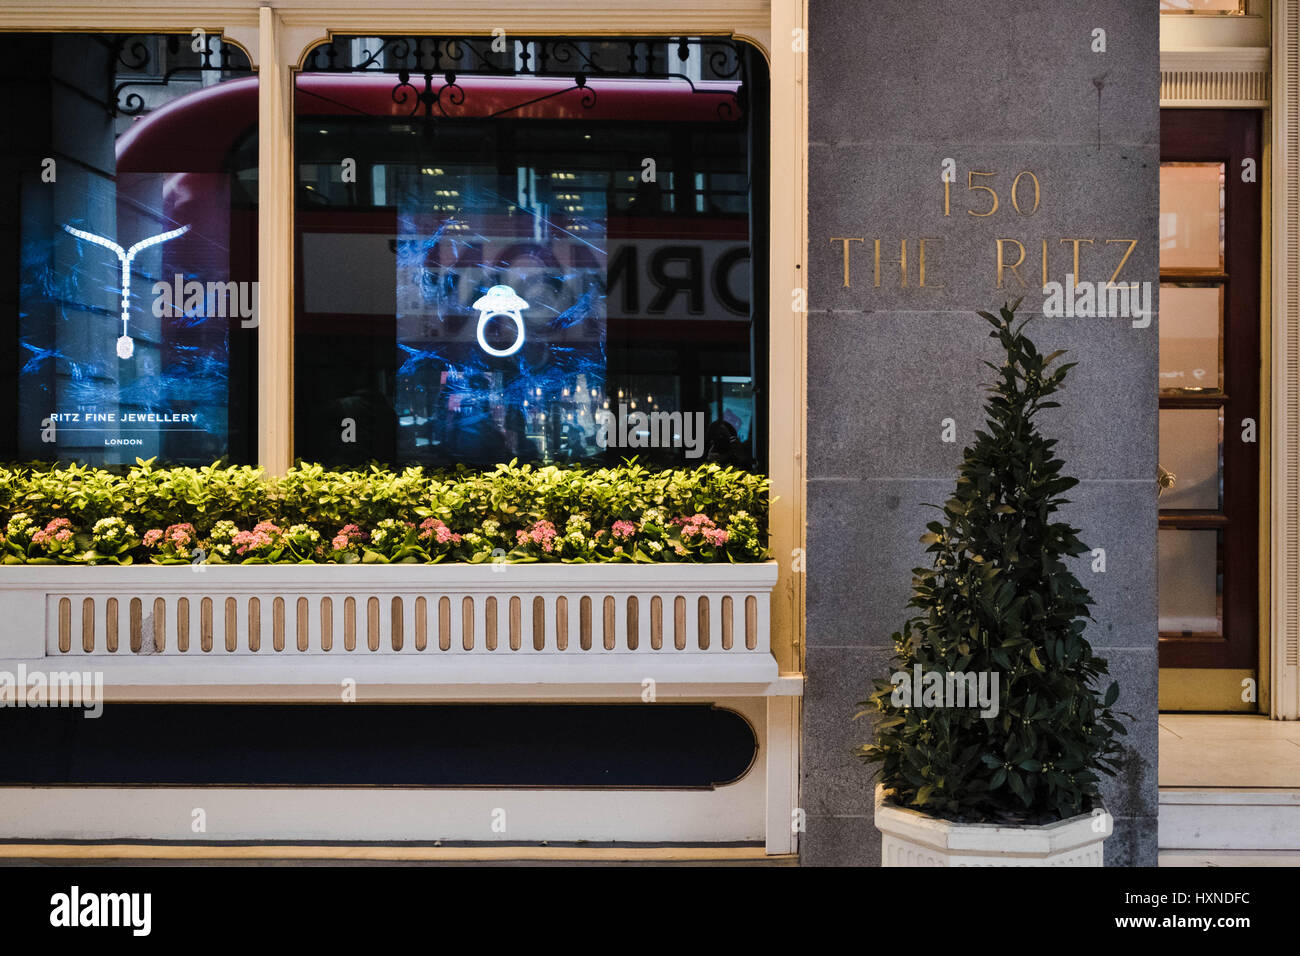 Farbe Bild einer engen einem Namensschild in The Ritz Luxushotel am Piccadilly, London, zeigt ein Fenster Werbung ihre edlen Schmuck und einen Bus. Stockfoto